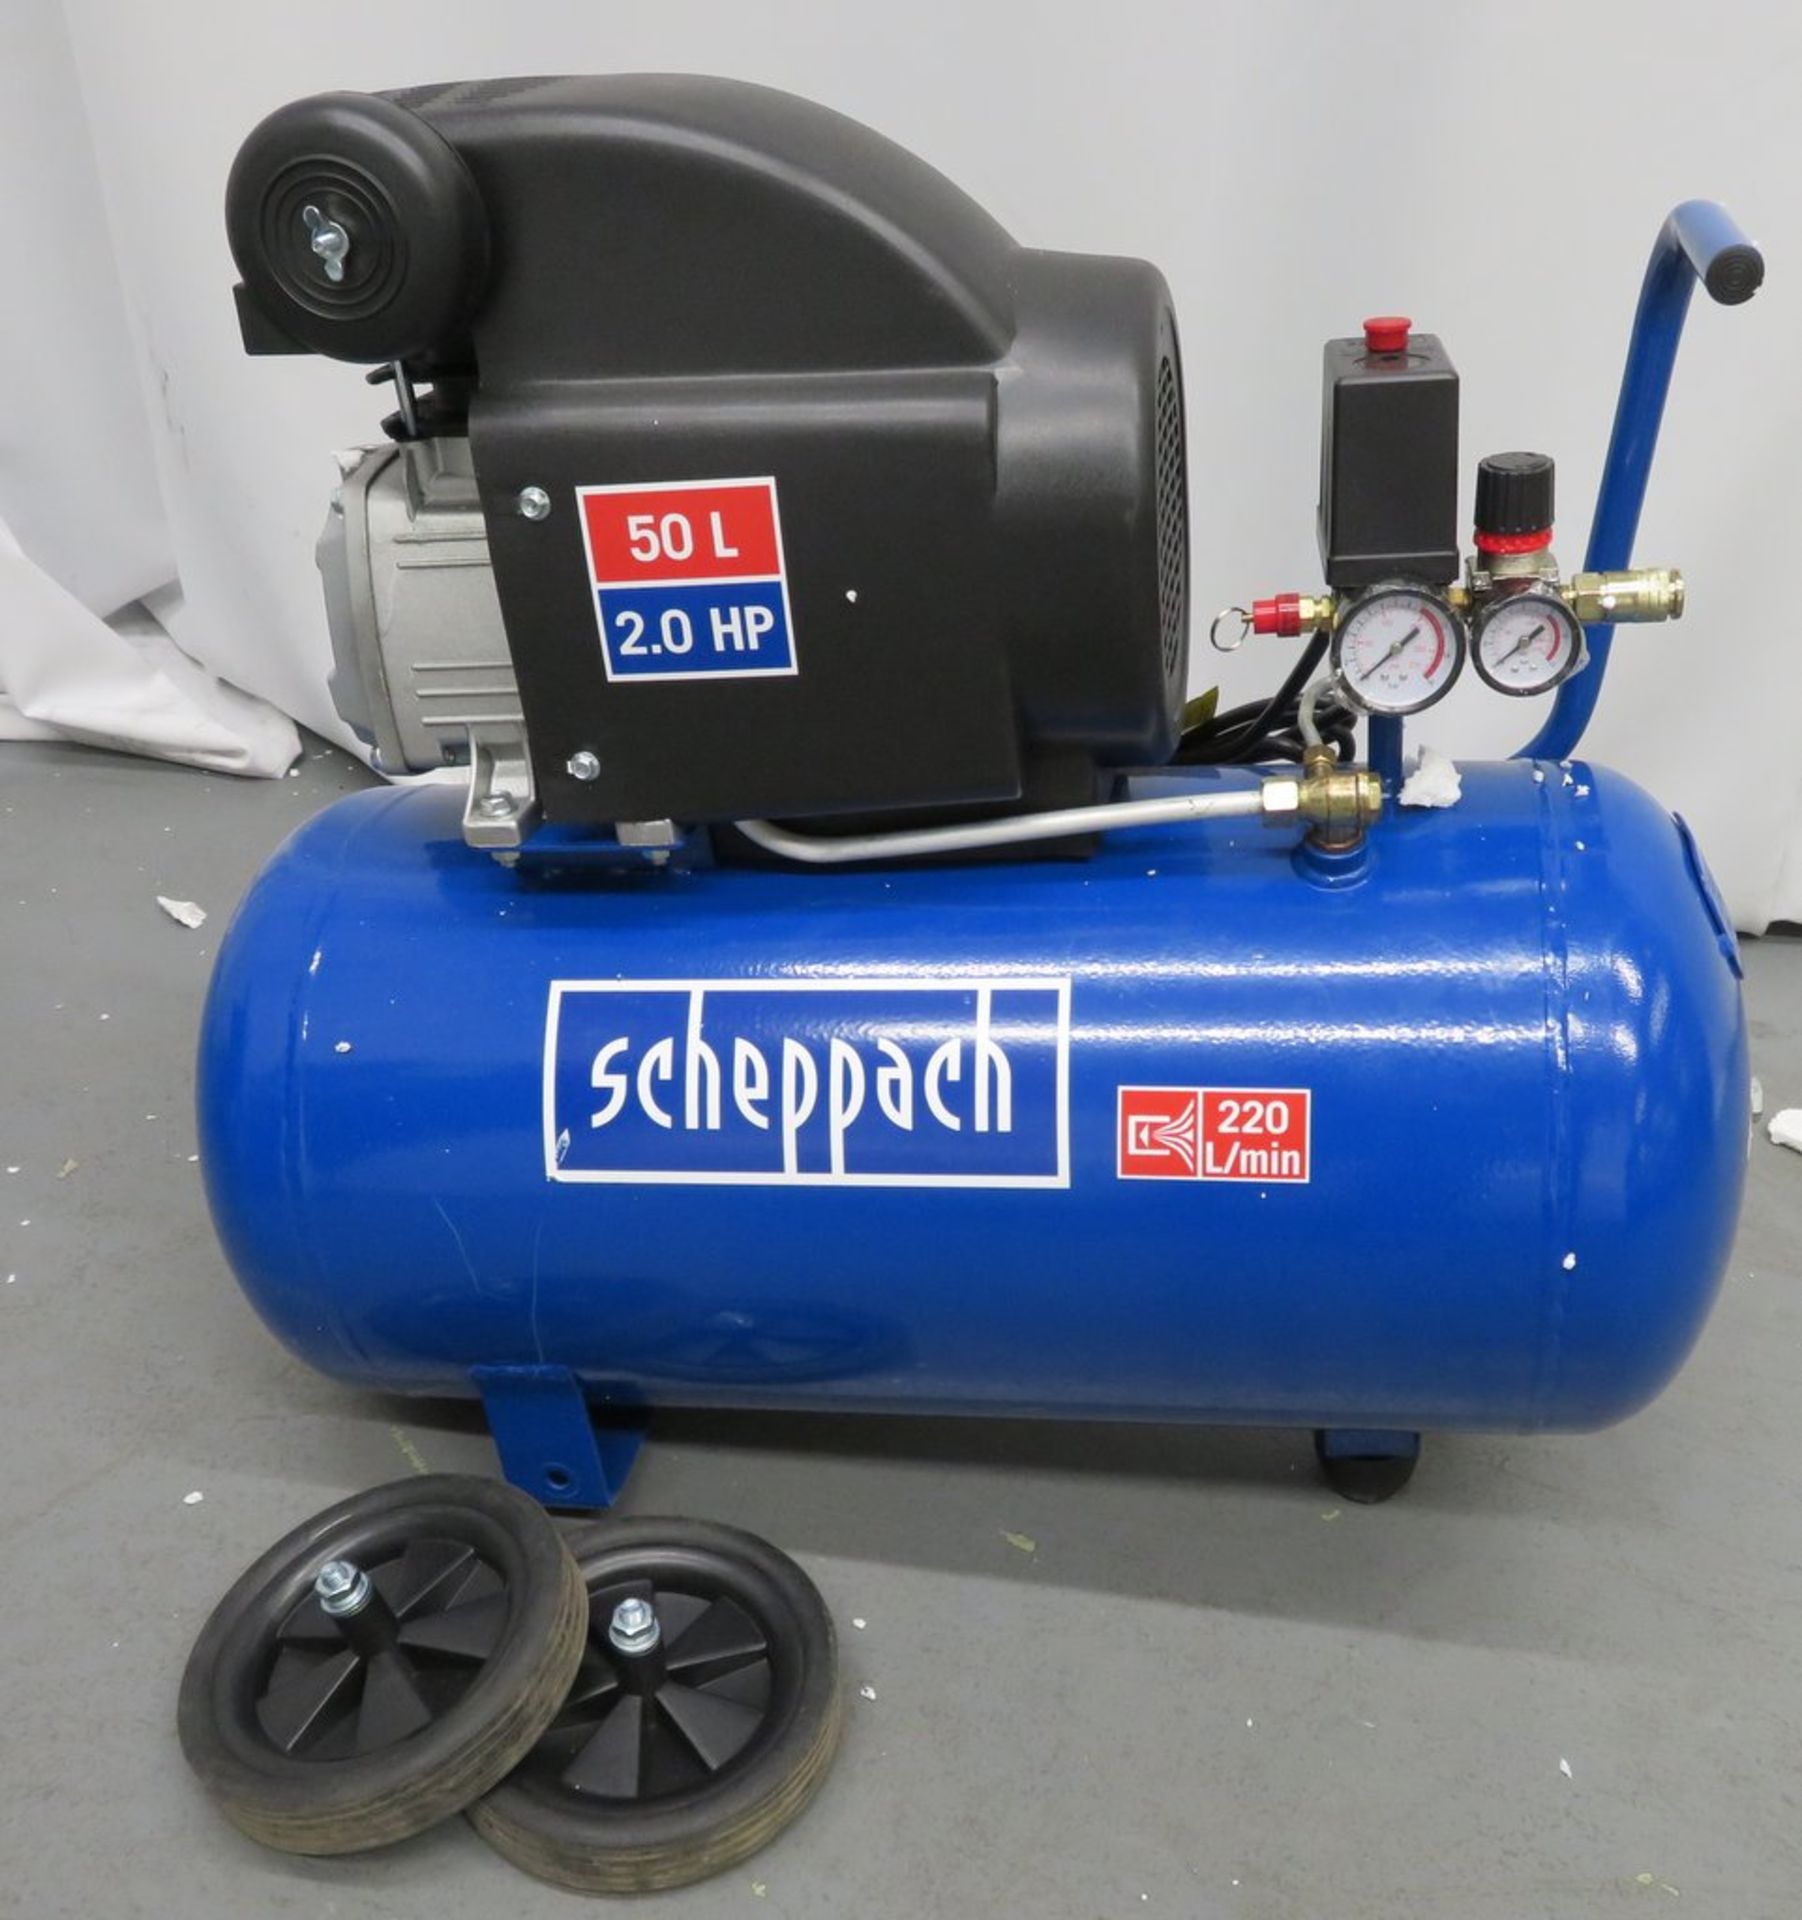 Scheppach 50 Litre Electrical Air Compressor. Model: HC54. 230V